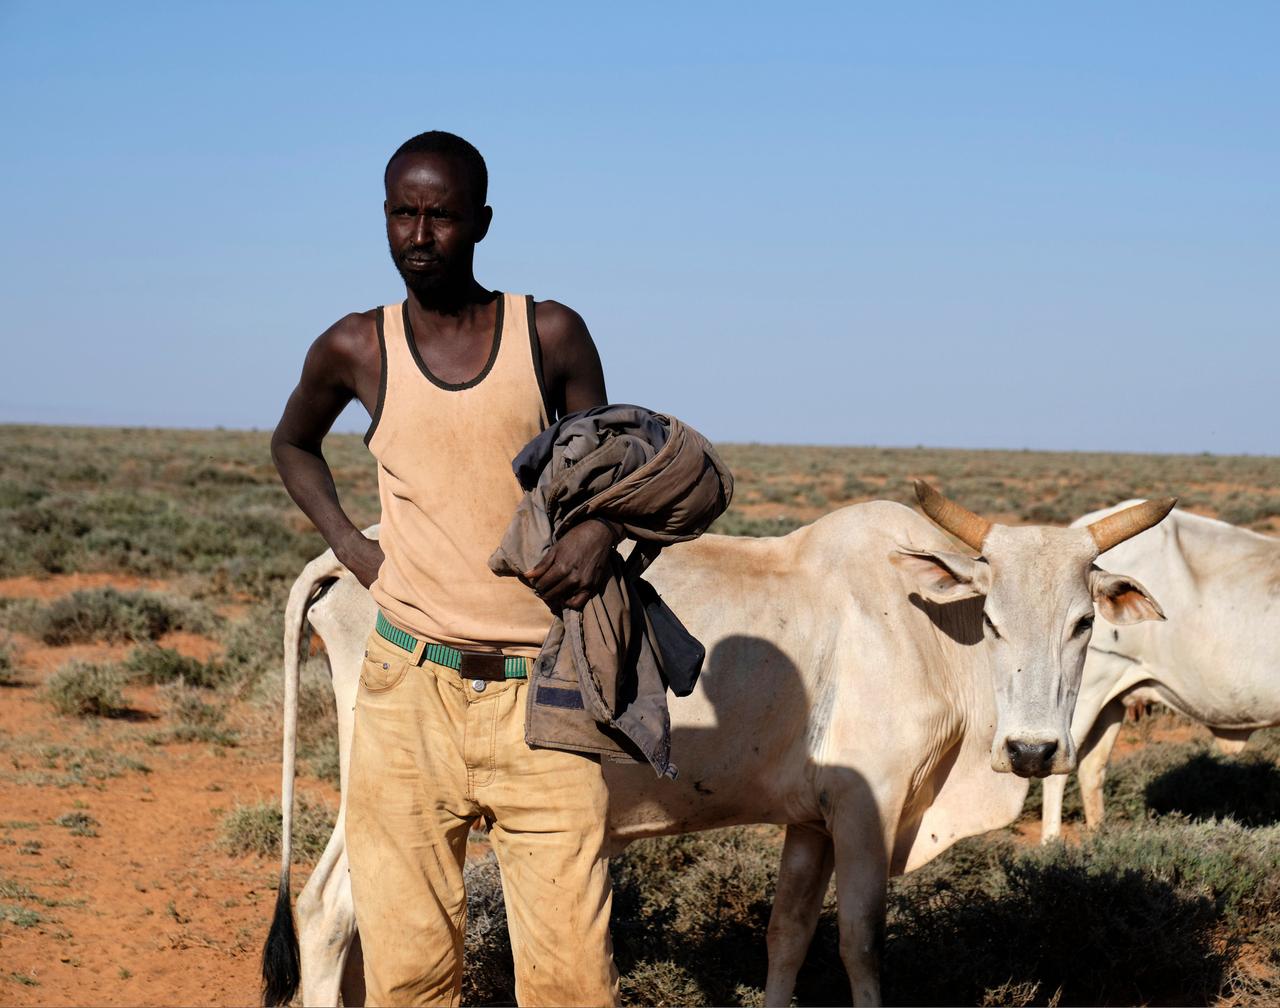 Der 25-jährige Abdirashid Yasin trägt helles Hemd und helle Hose. Neben ihm stehen abgemagerte Kühe. Der Boden ist trocken, vereinzelt gibt es grüne Büsche.